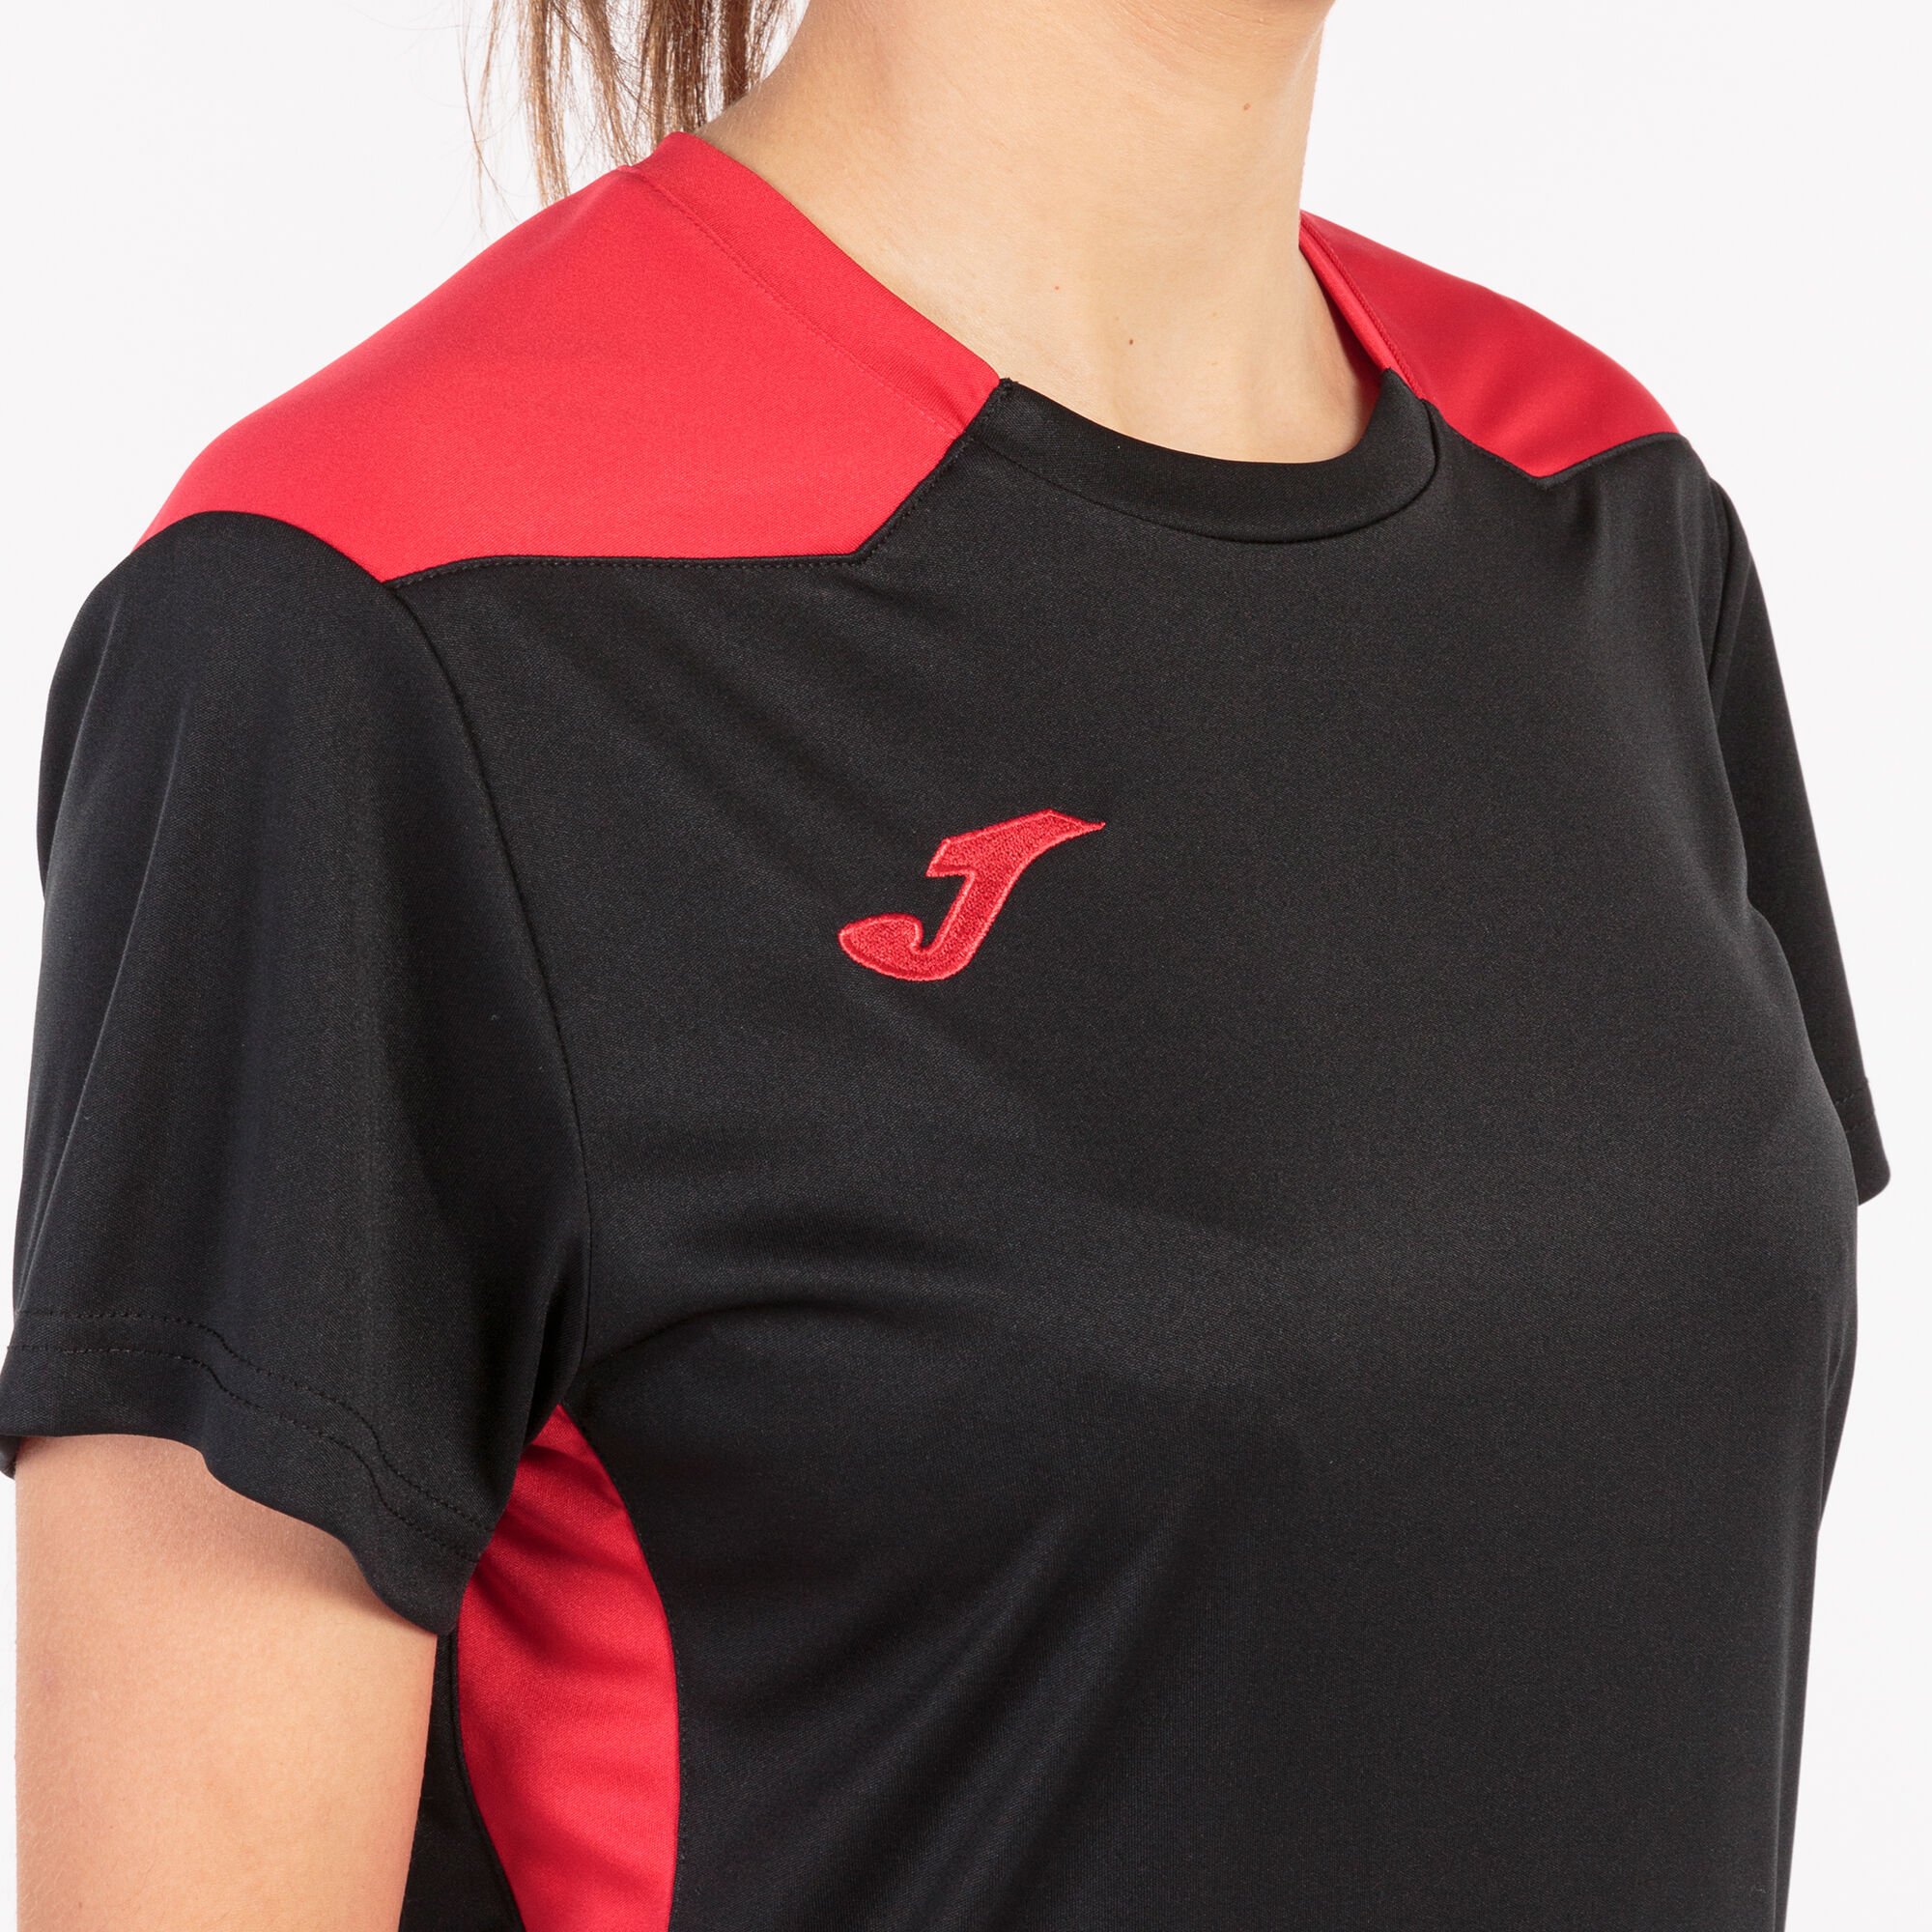 Camiseta manga corta mujer Championship VI negro rojo